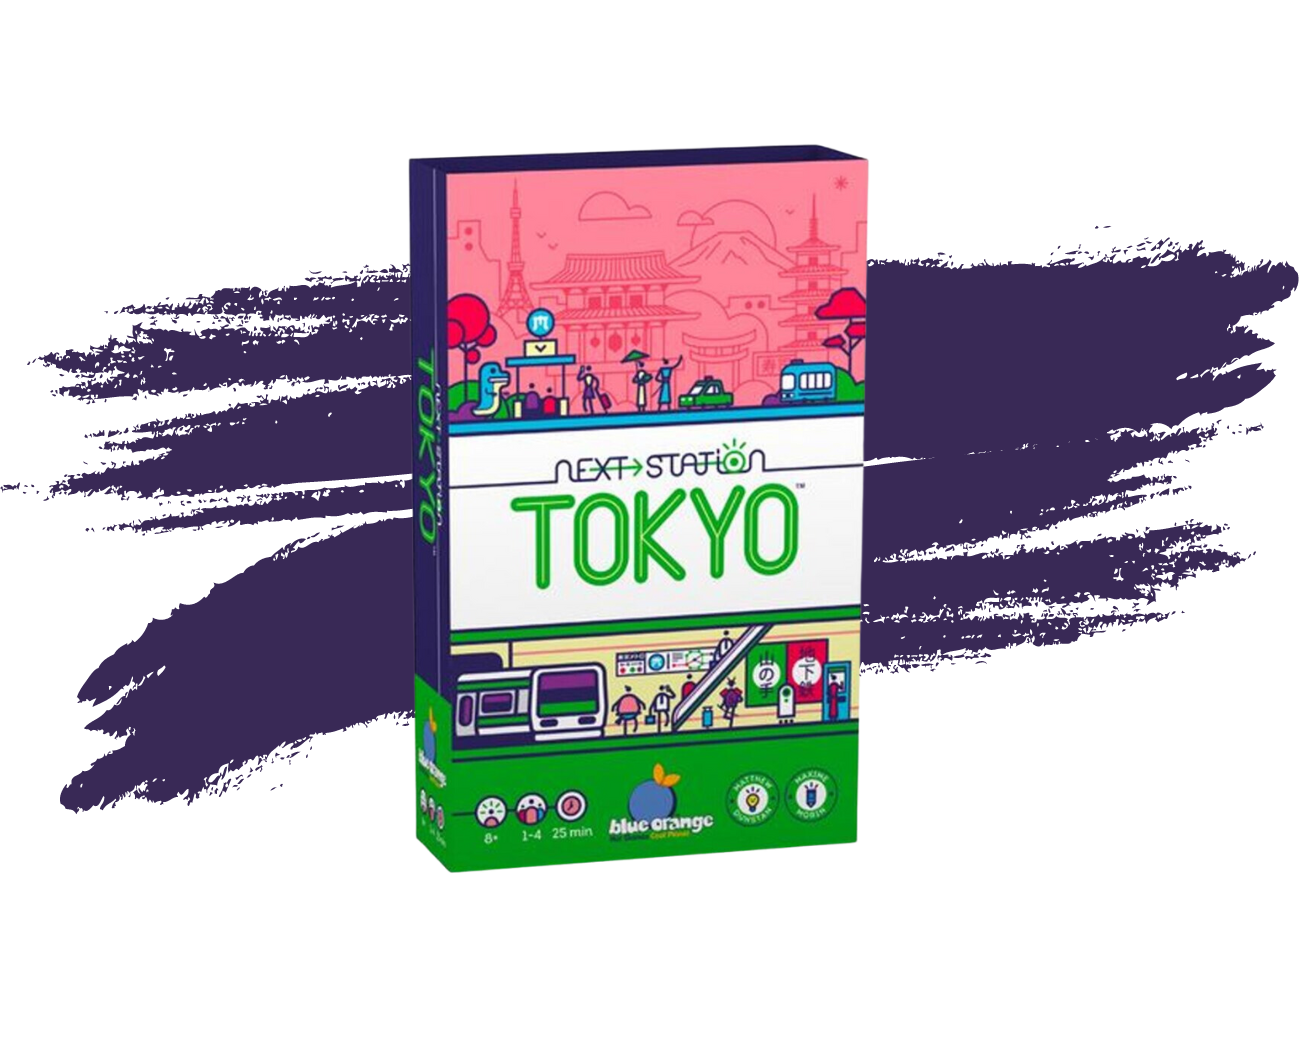 Boîte du jeu de société "Next station Tokyo".